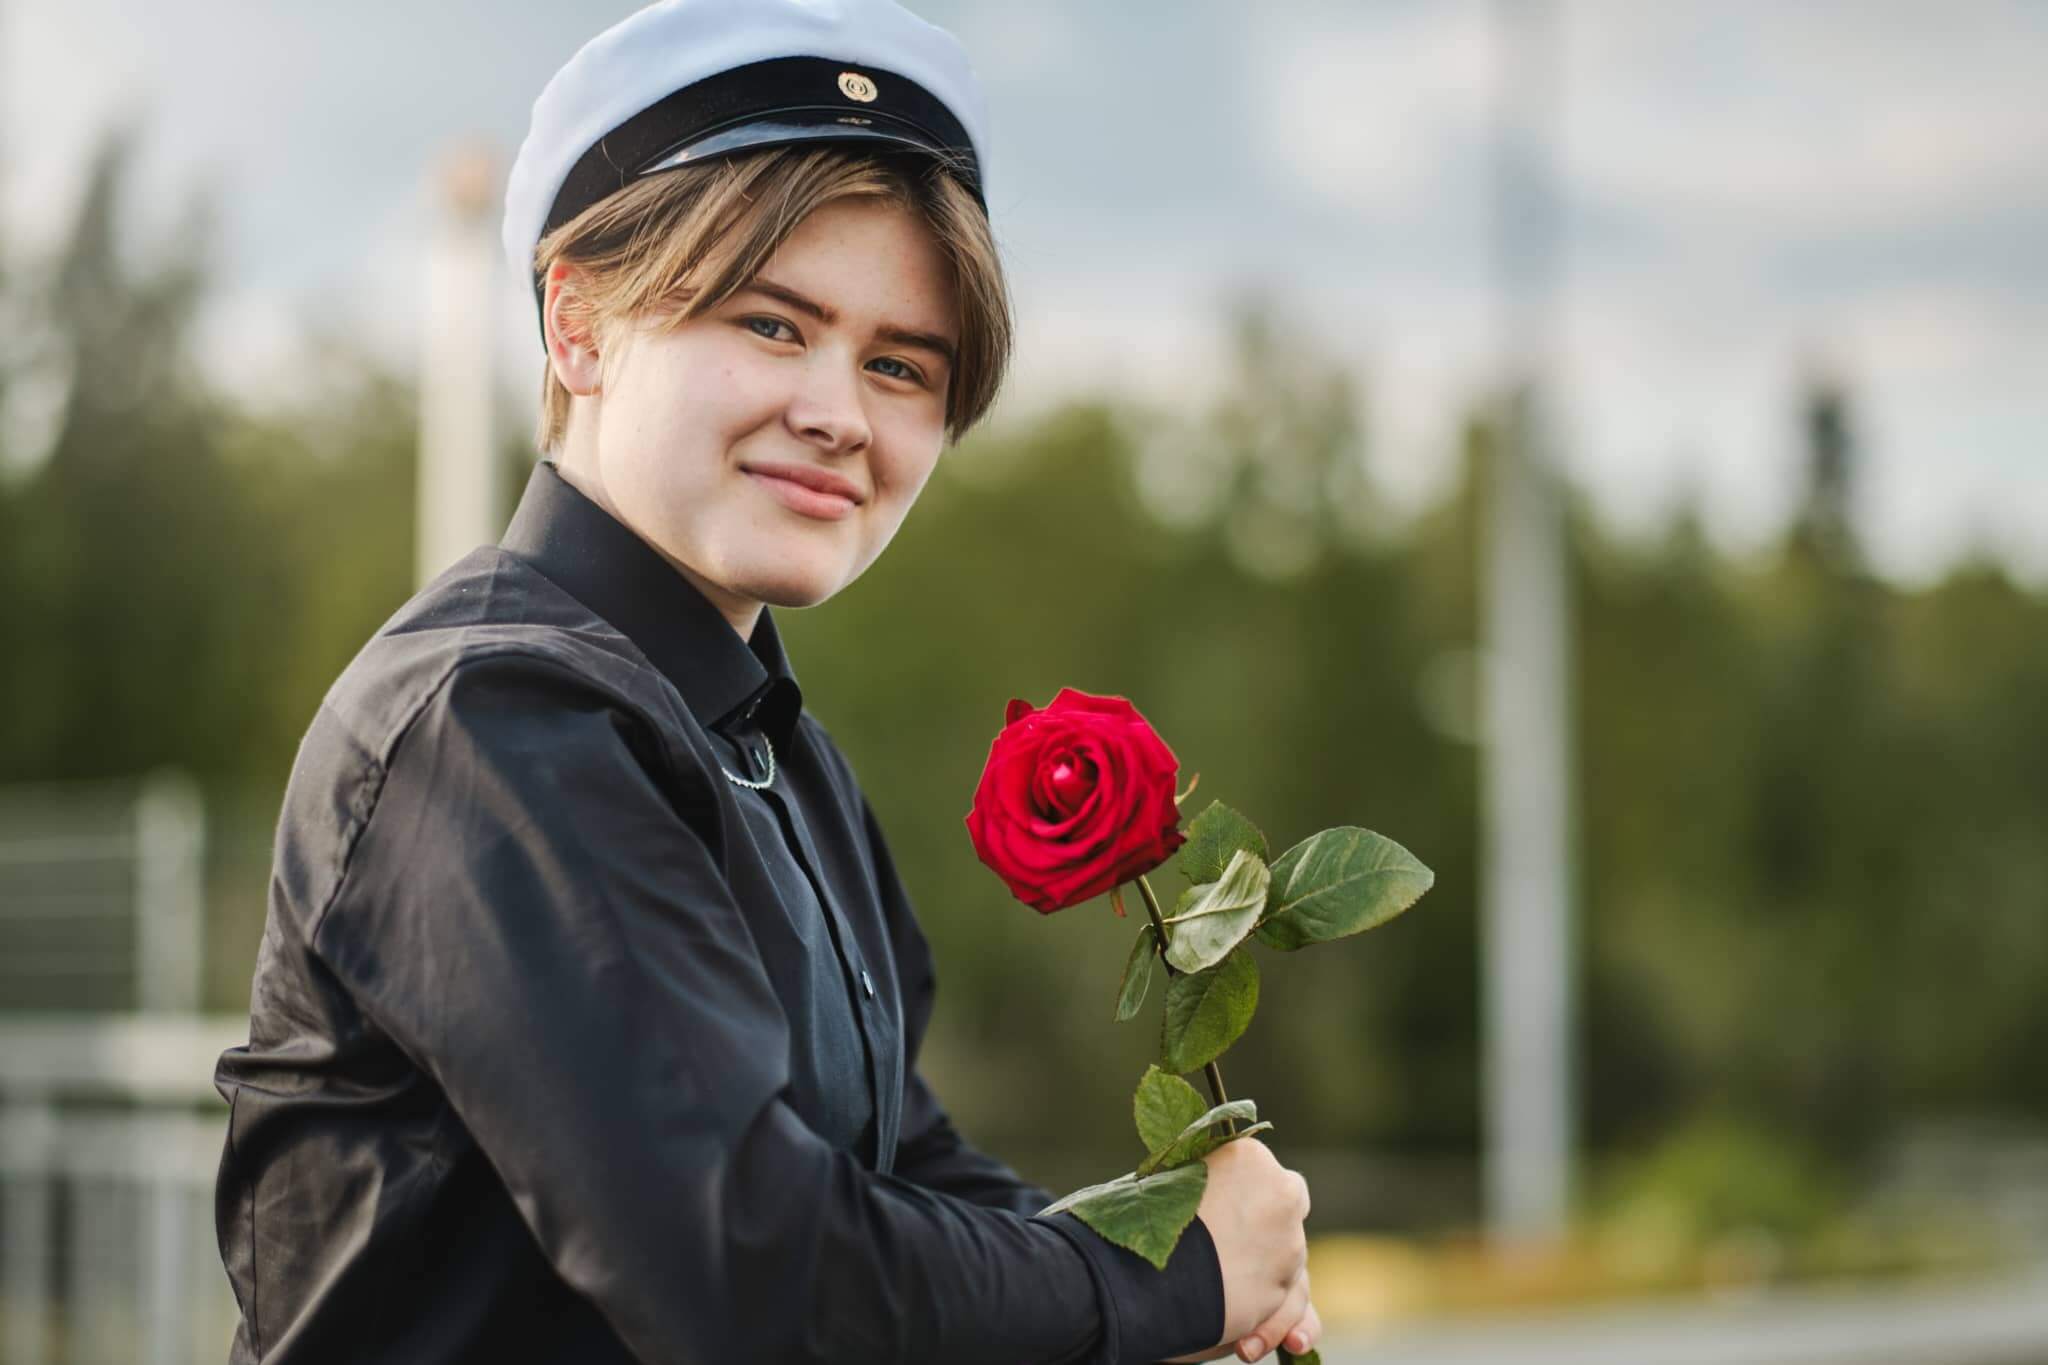 Ylioppilaskuva Jyväskylä Naissaaressa ruusu kädessä